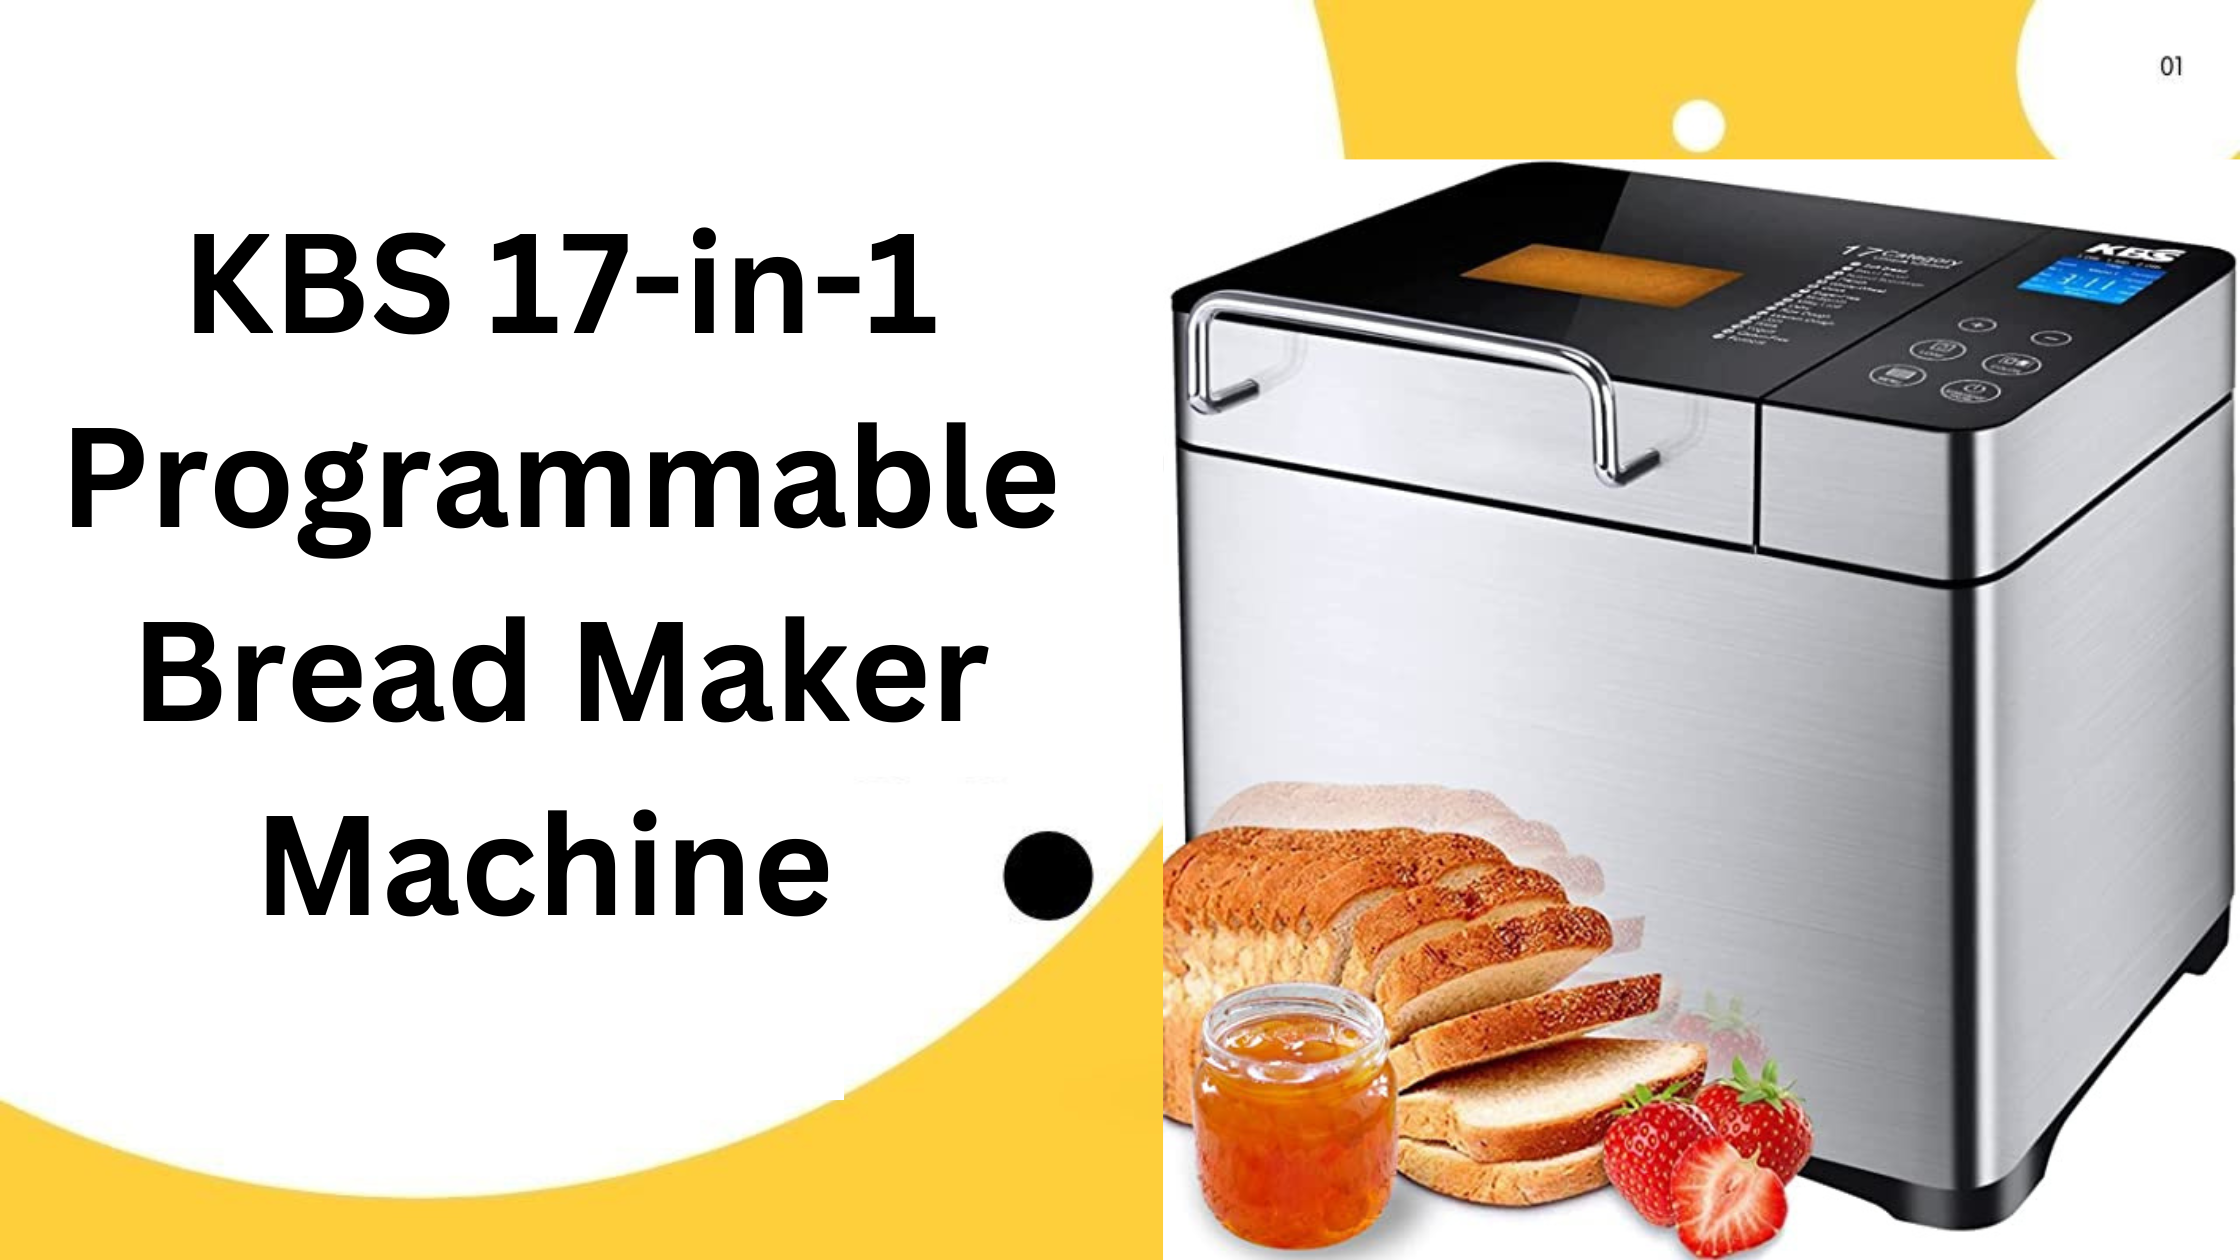 KBS 17-in-1 Programmable Bread Maker Machine